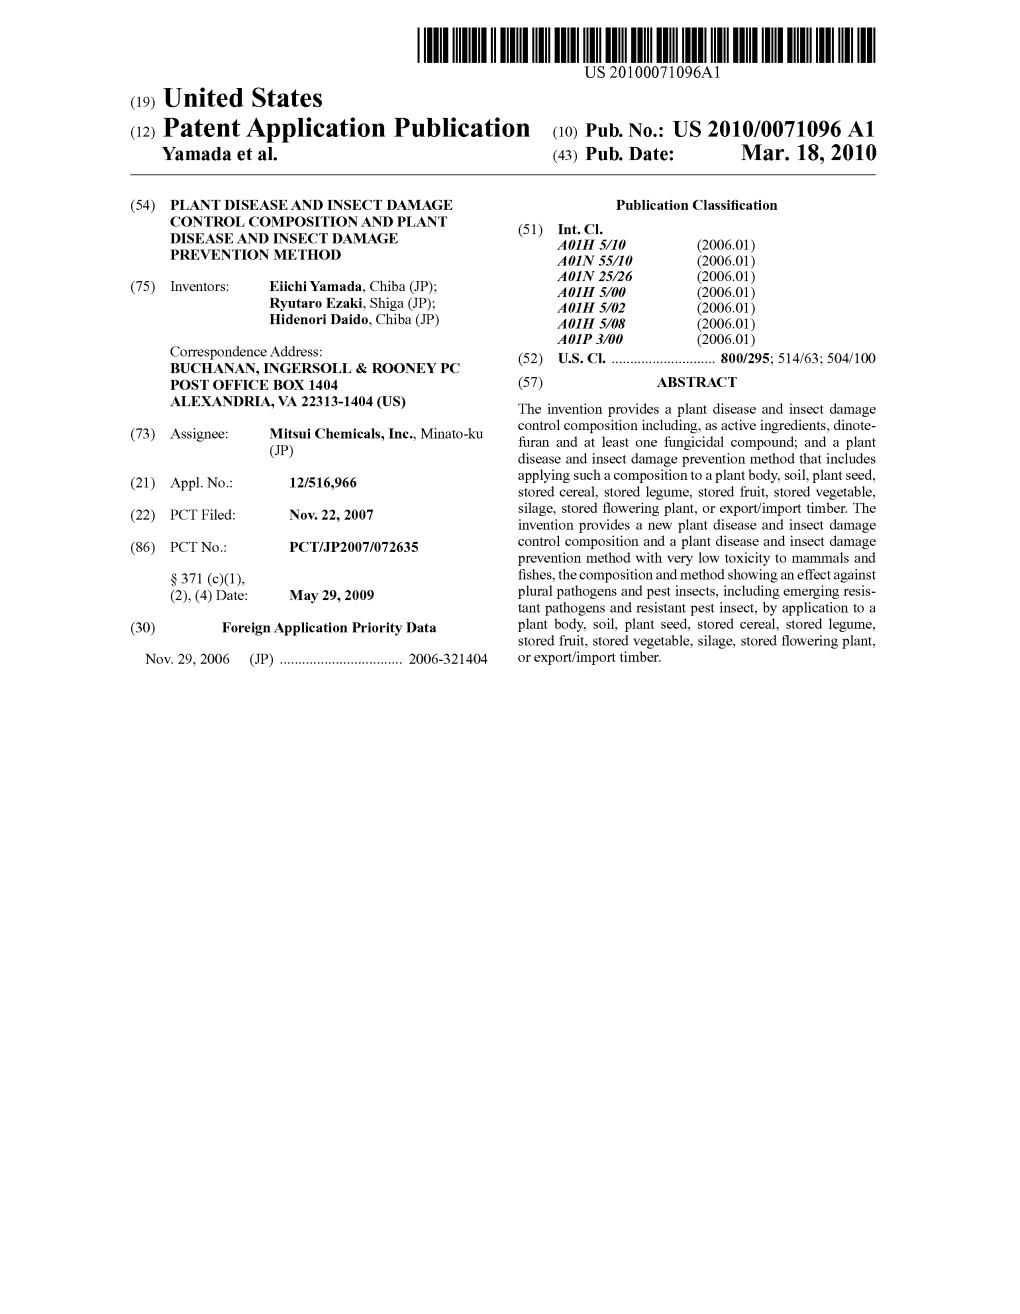 (12) Patent Application Publication (10) Pub. No.: US 2010/0071096 A1 Yamada Et Al